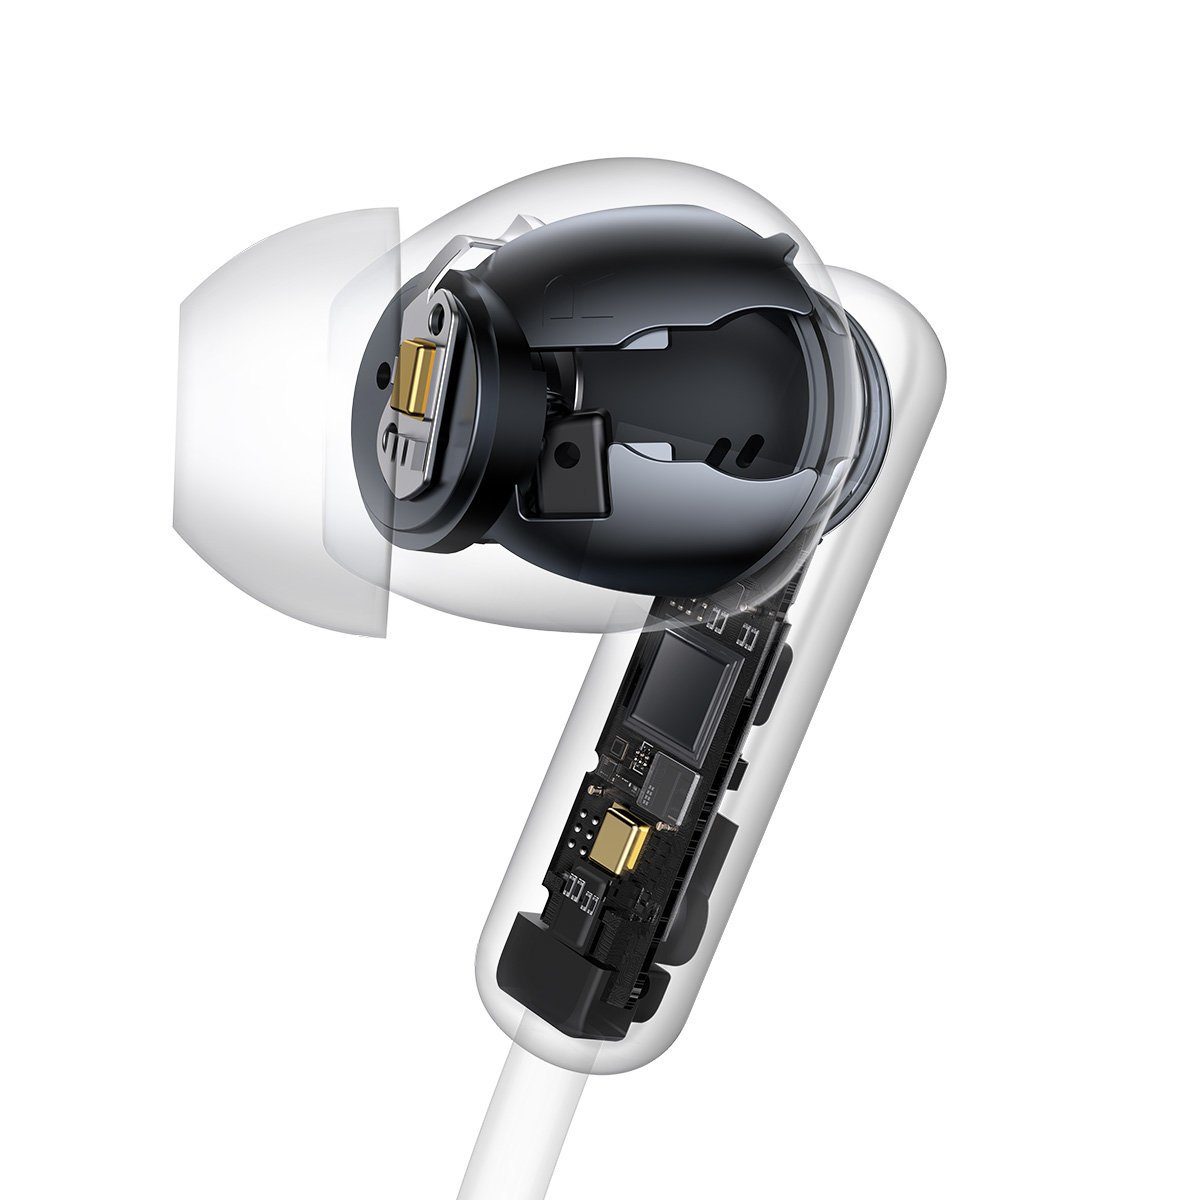 Bluetooth der creme, 5.2, Baseus U2 Dauer Musikwiedergabe: 5.2 In-Ear-Kopfhörer 15 Wireless Baseus Stunden) Earphones Bowie Bluetooth In-Ear-Kopfhörer, etwa (Bluetooth, Neckband Creamy-white Technologie, TWS,